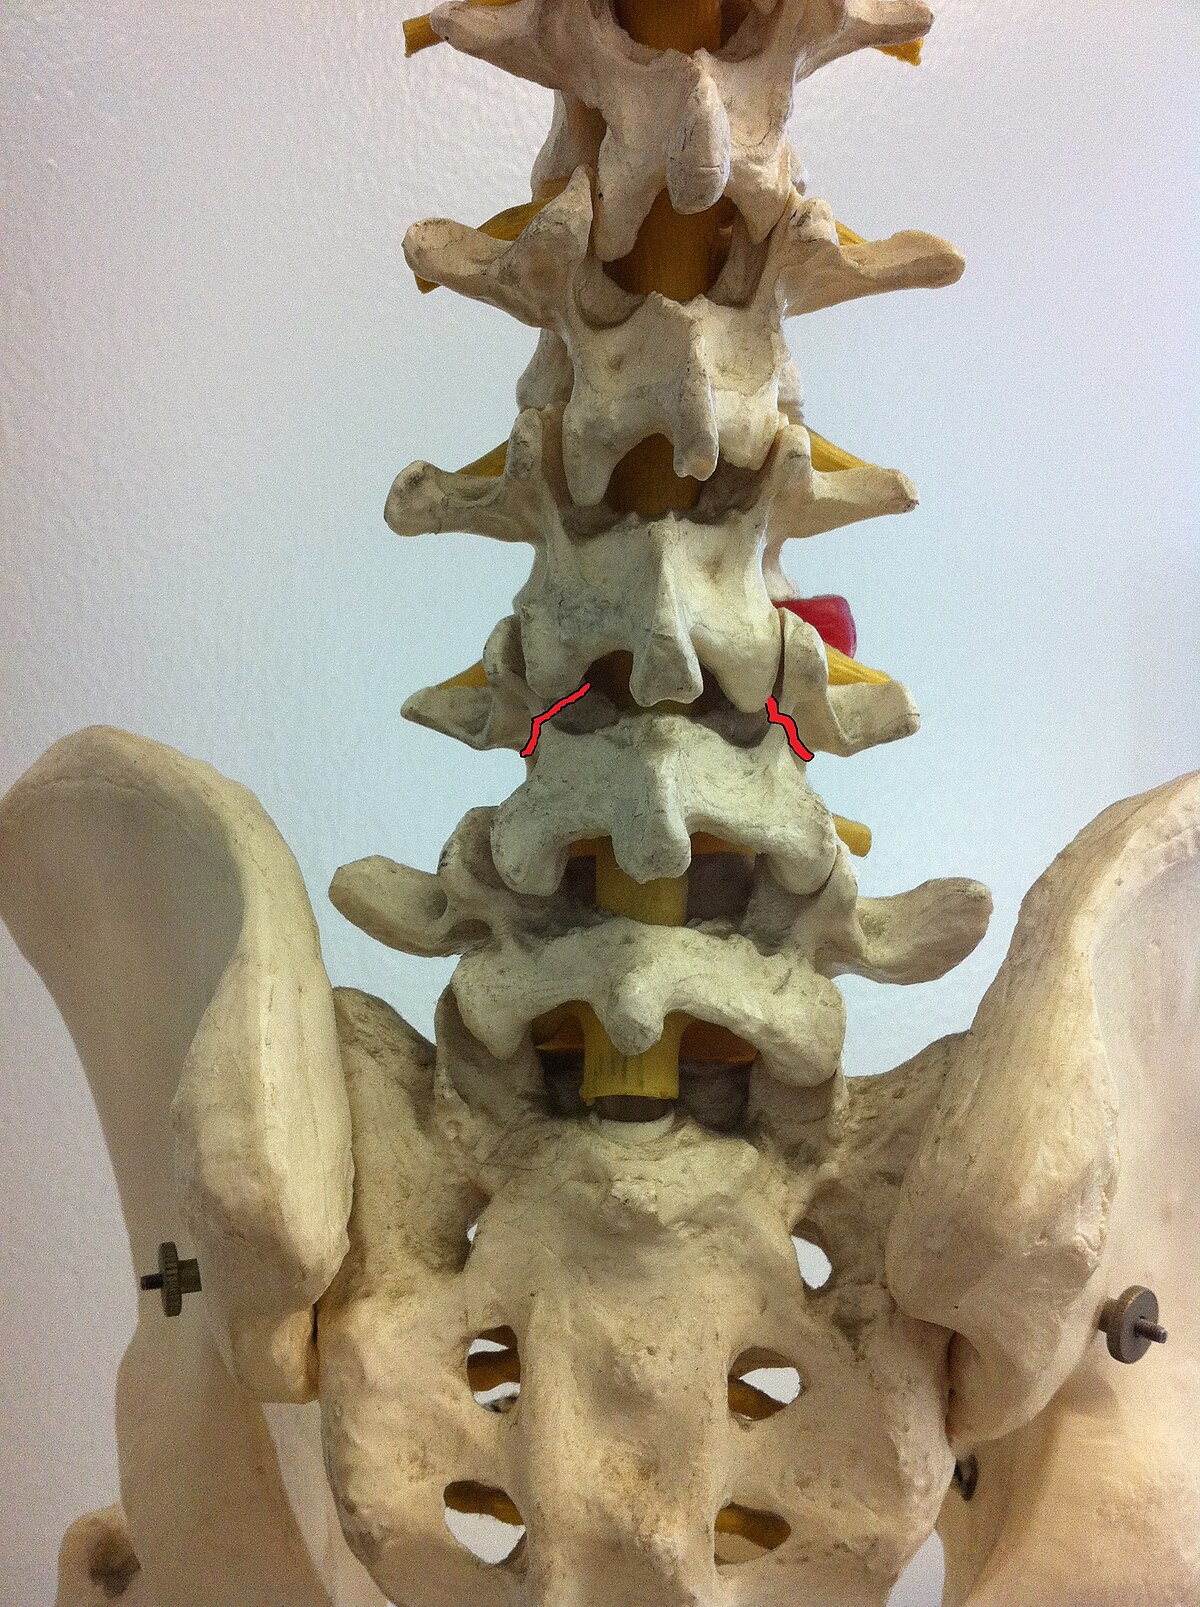 https://upload.wikimedia.org/wikipedia/commons/thumb/3/3e/Spondylolysis-_back_pain.jpg/1200px-Spondylolysis-_back_pain.jpg